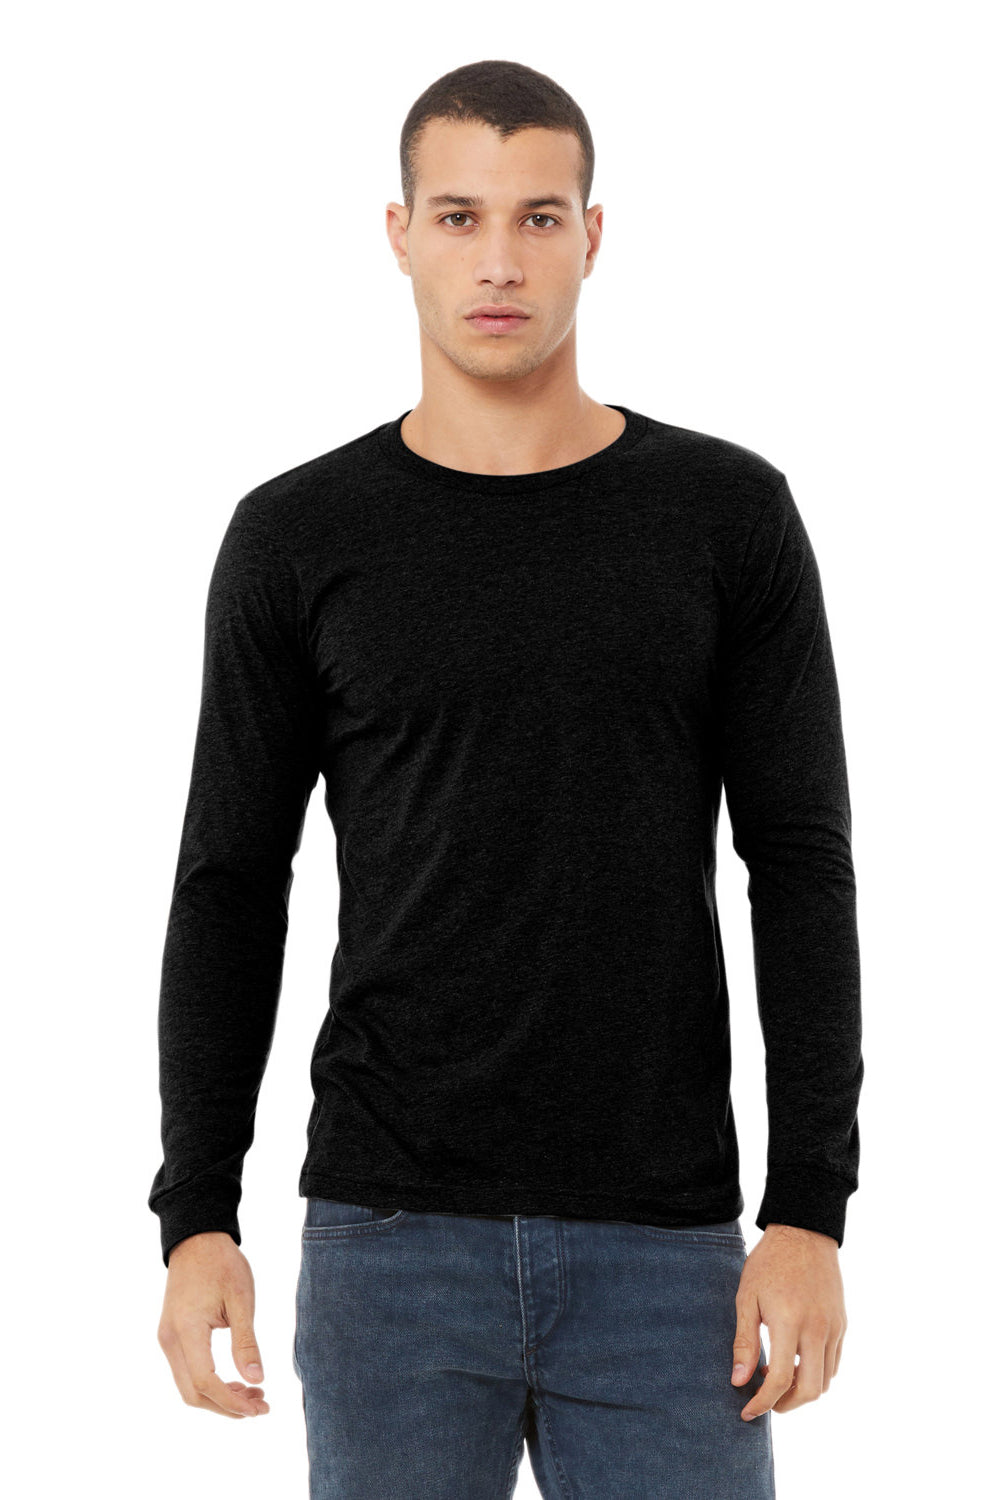 Bella + Canvas BC3501CVC Mens CVC Long Sleeve Crewneck T-Shirt Solid Black Model Front